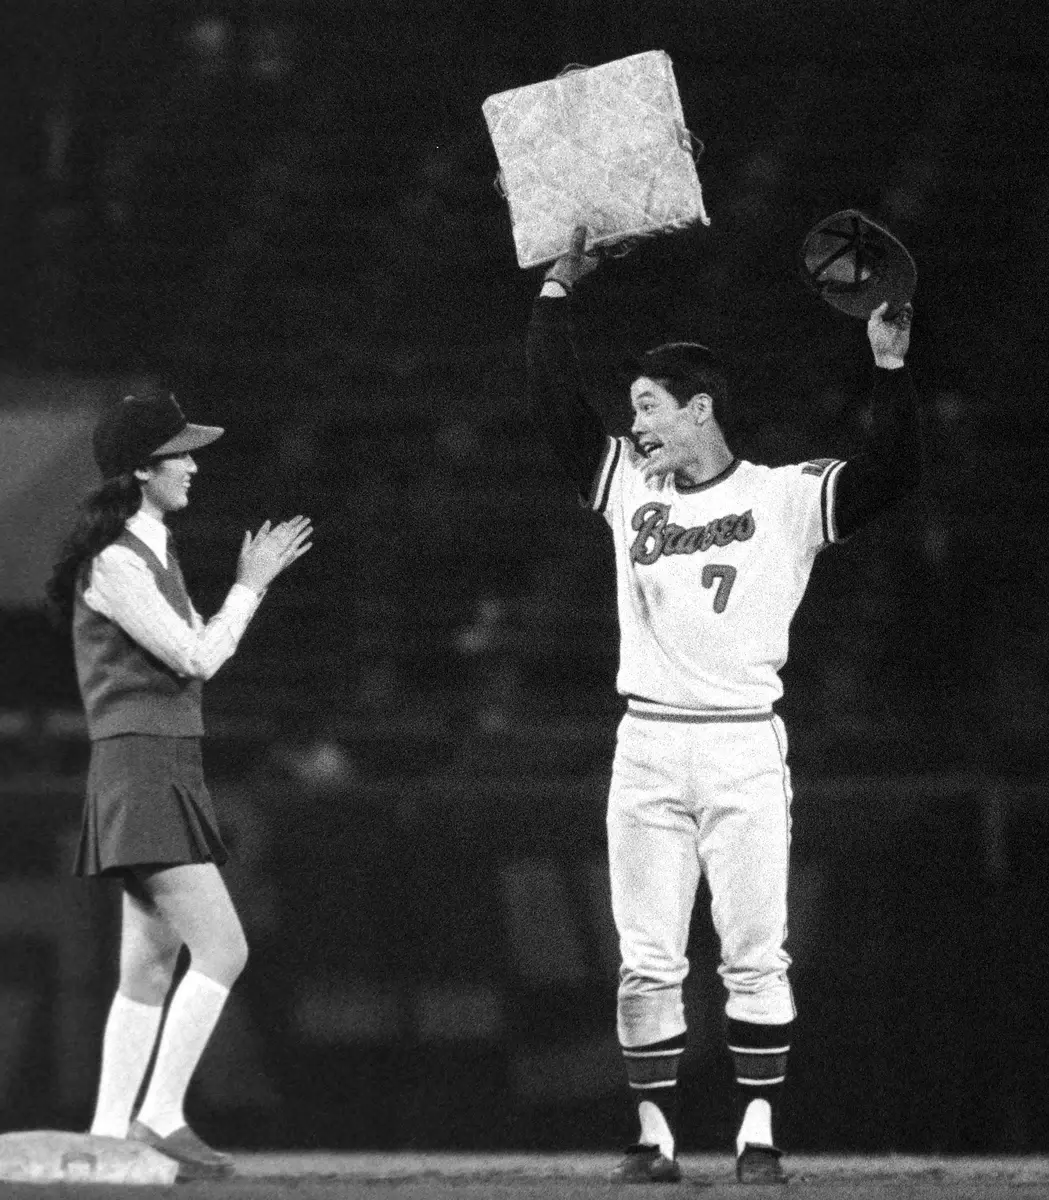 1972年9月26日の南海戦で、シーズン105盗塁の世界新を達成し、記念の二塁ベースを掲げる阪急・福本豊